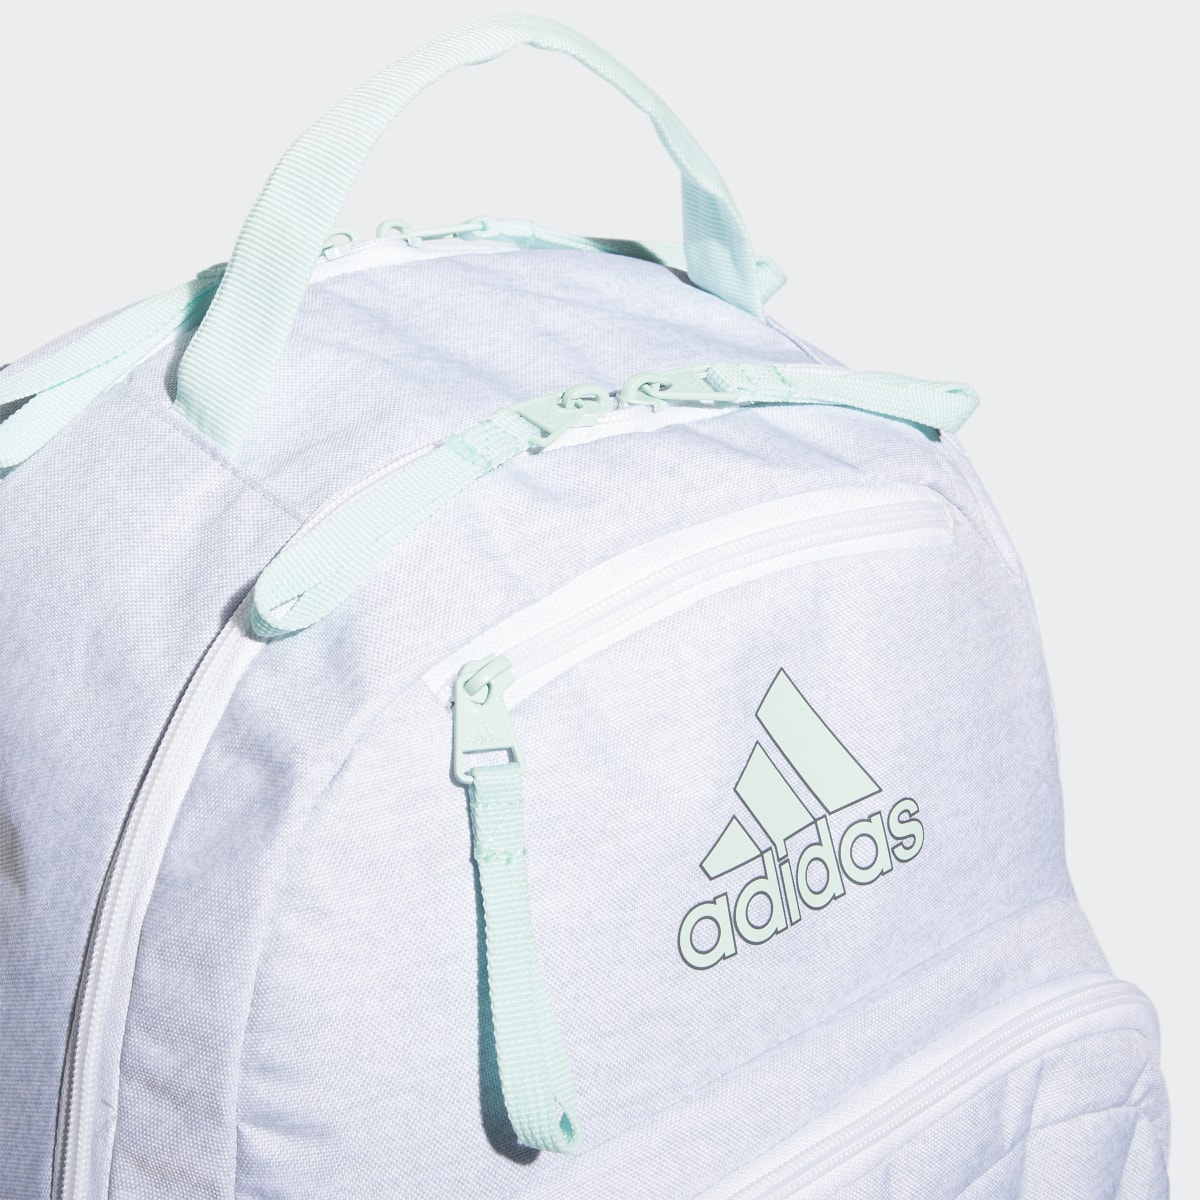 Adidas Adaptive Backpack. 6